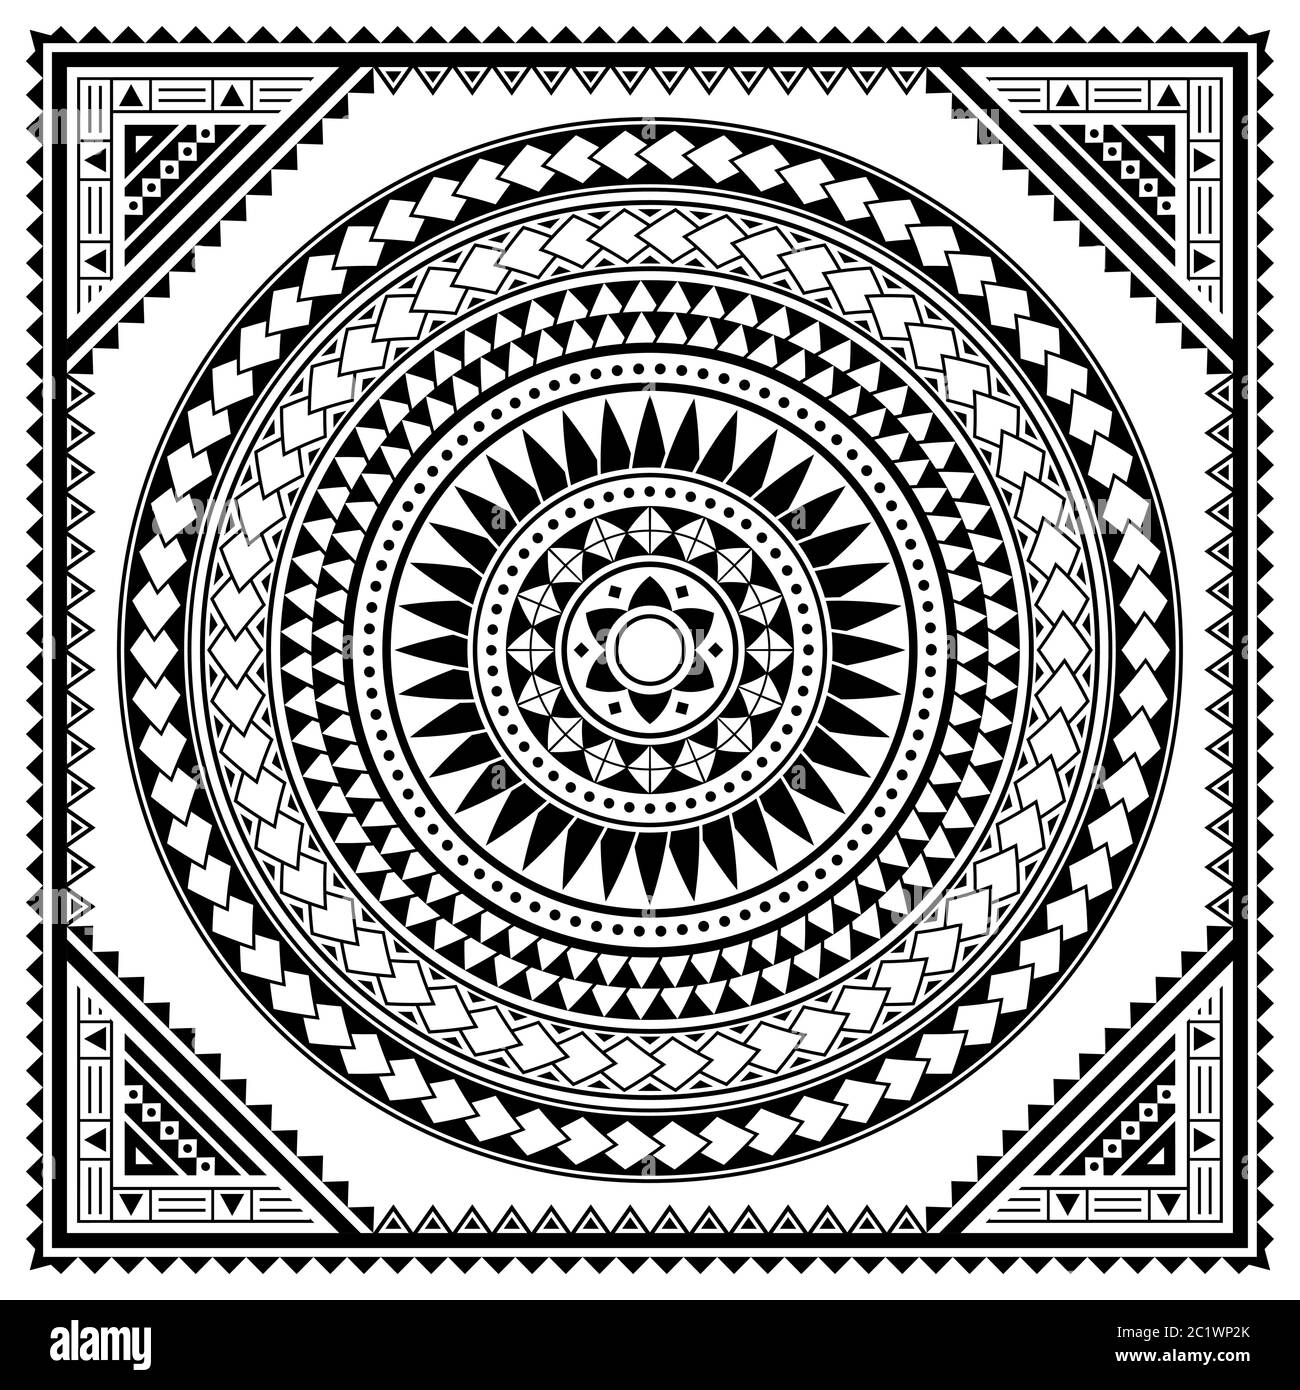 Motif de carte de vœux polynésien tribal mandala vectoriel, design rétro hawaïen inspiré de l'art géométrique traditionnel Illustration de Vecteur